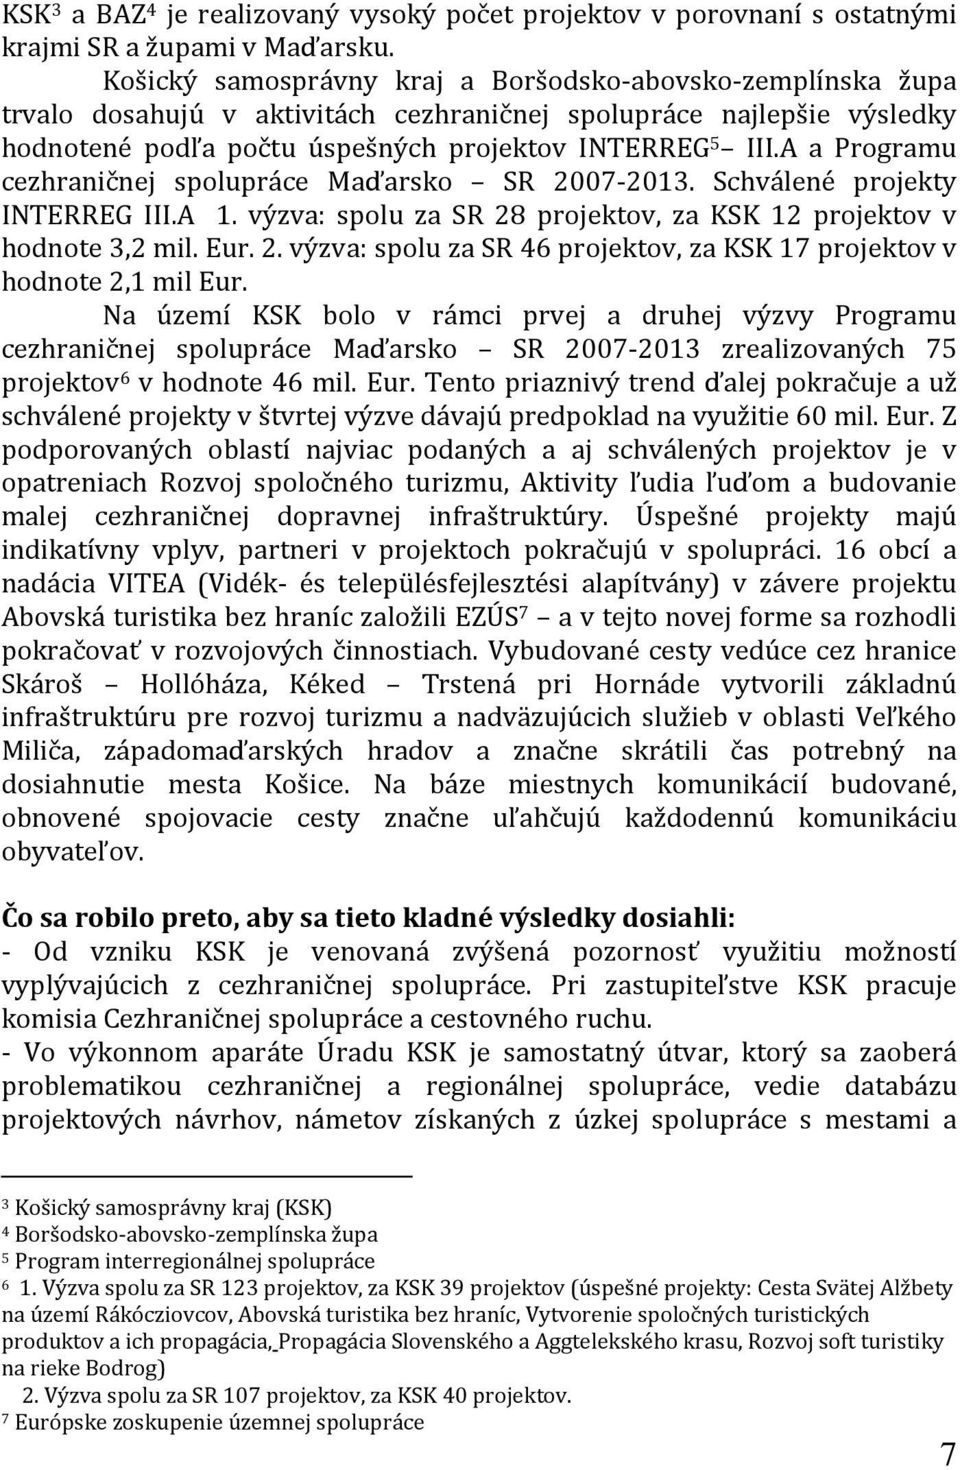 A a Programu cezhraničnej spolupráce Maďarsko SR 2007-2013. Schválené projekty INTERREG III.A 1. výzva: spolu za SR 28 projektov, za KSK 12 projektov v hodnote 3,2 mil. Eur. 2. výzva: spolu za SR 46 projektov, za KSK 17 projektov v hodnote 2,1 mil Eur.